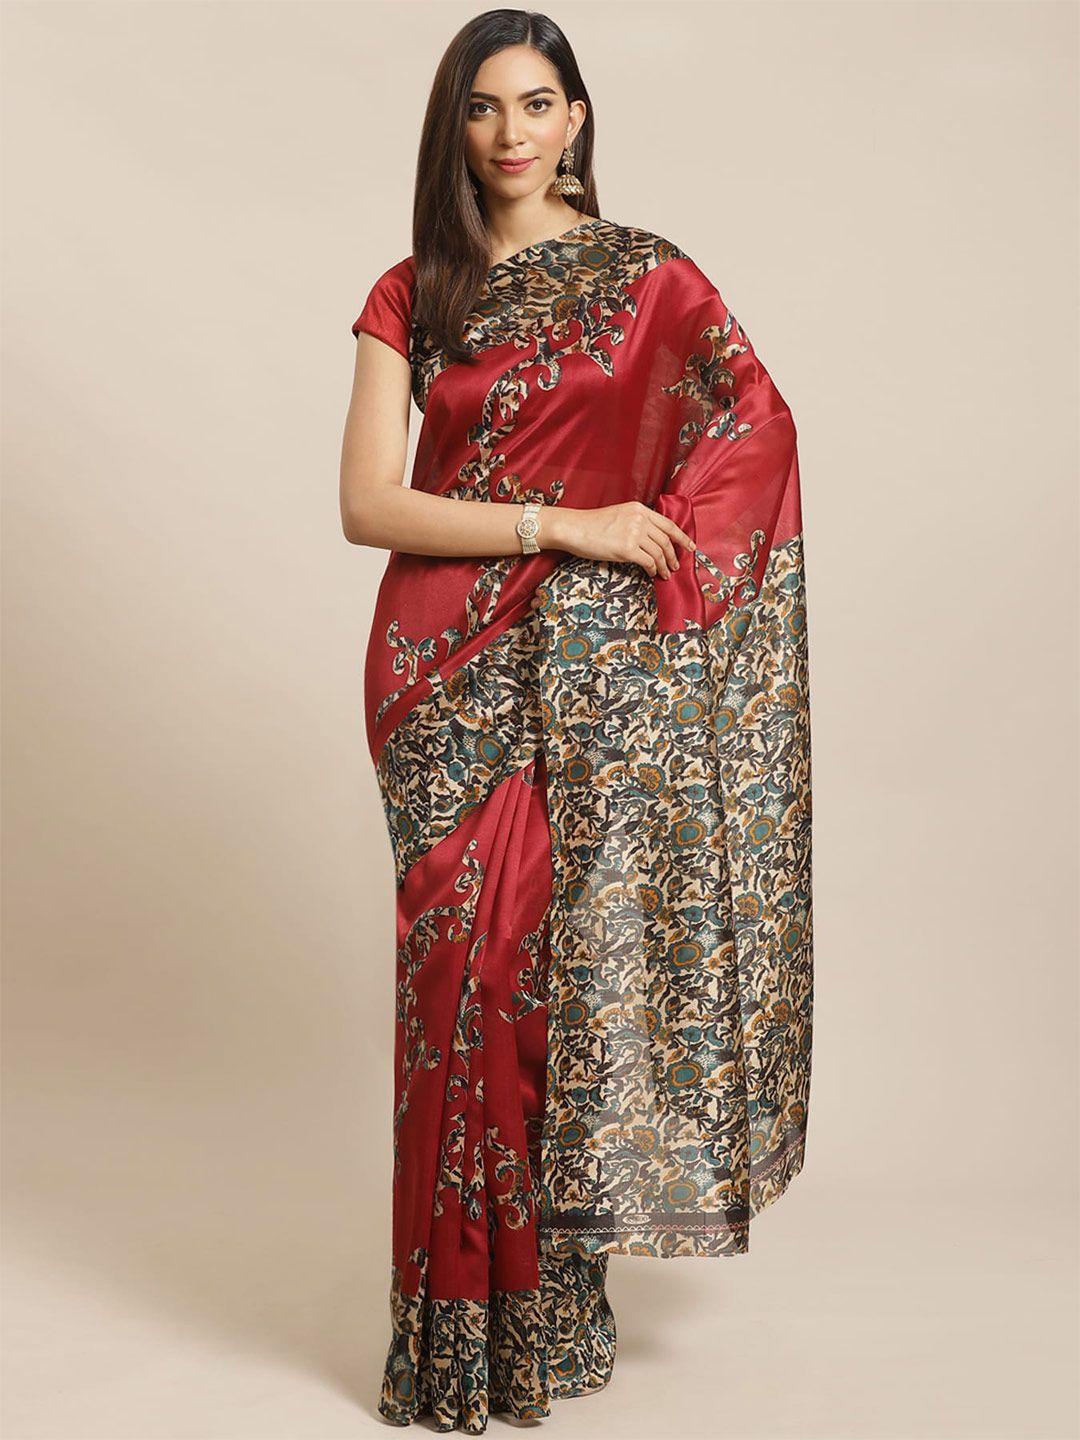 grubstaker ethnic motifs printed saree